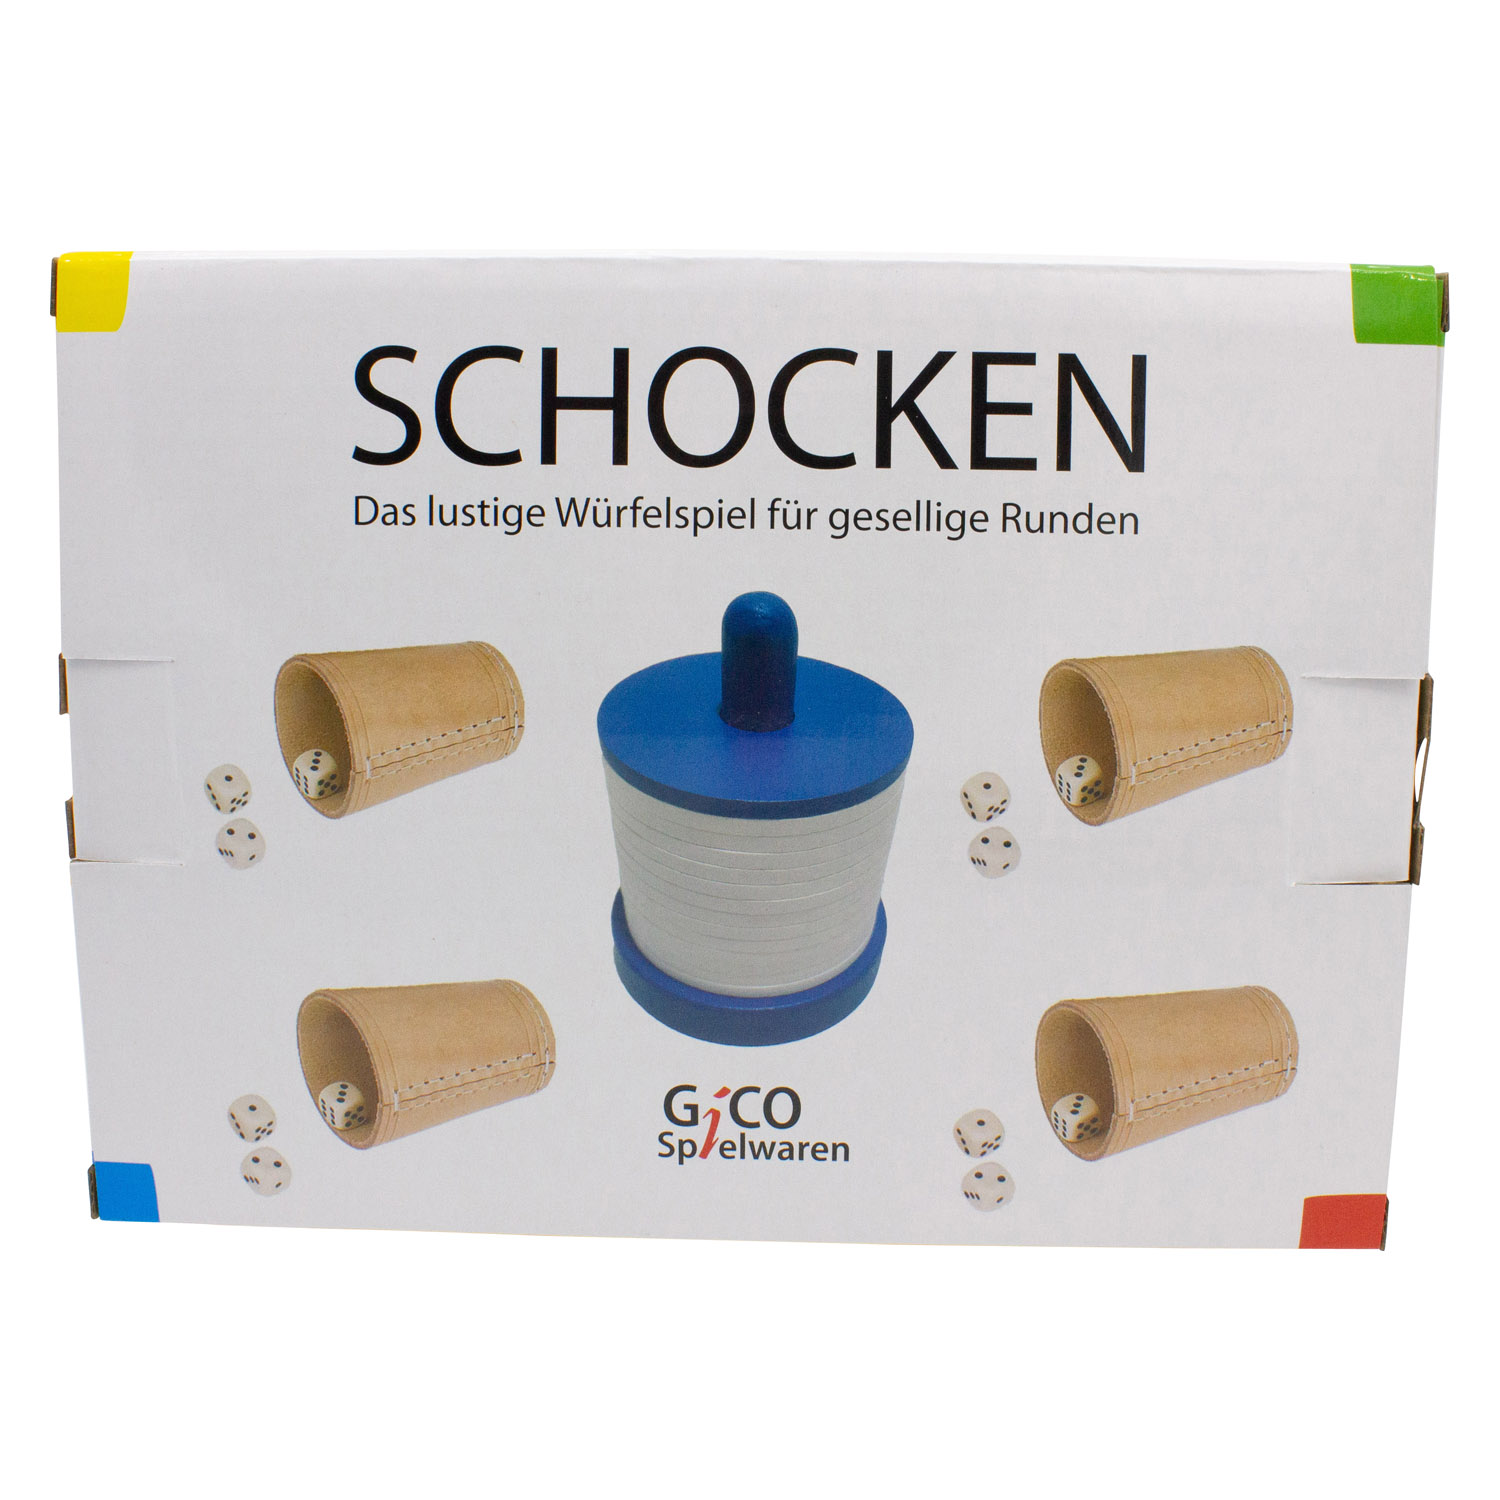 GICO Schocken Set Komplett - Schockbesteck, 4 Würfelbecher mit Würfeln - Jule Meiern Maxen Mörkeln - 7959